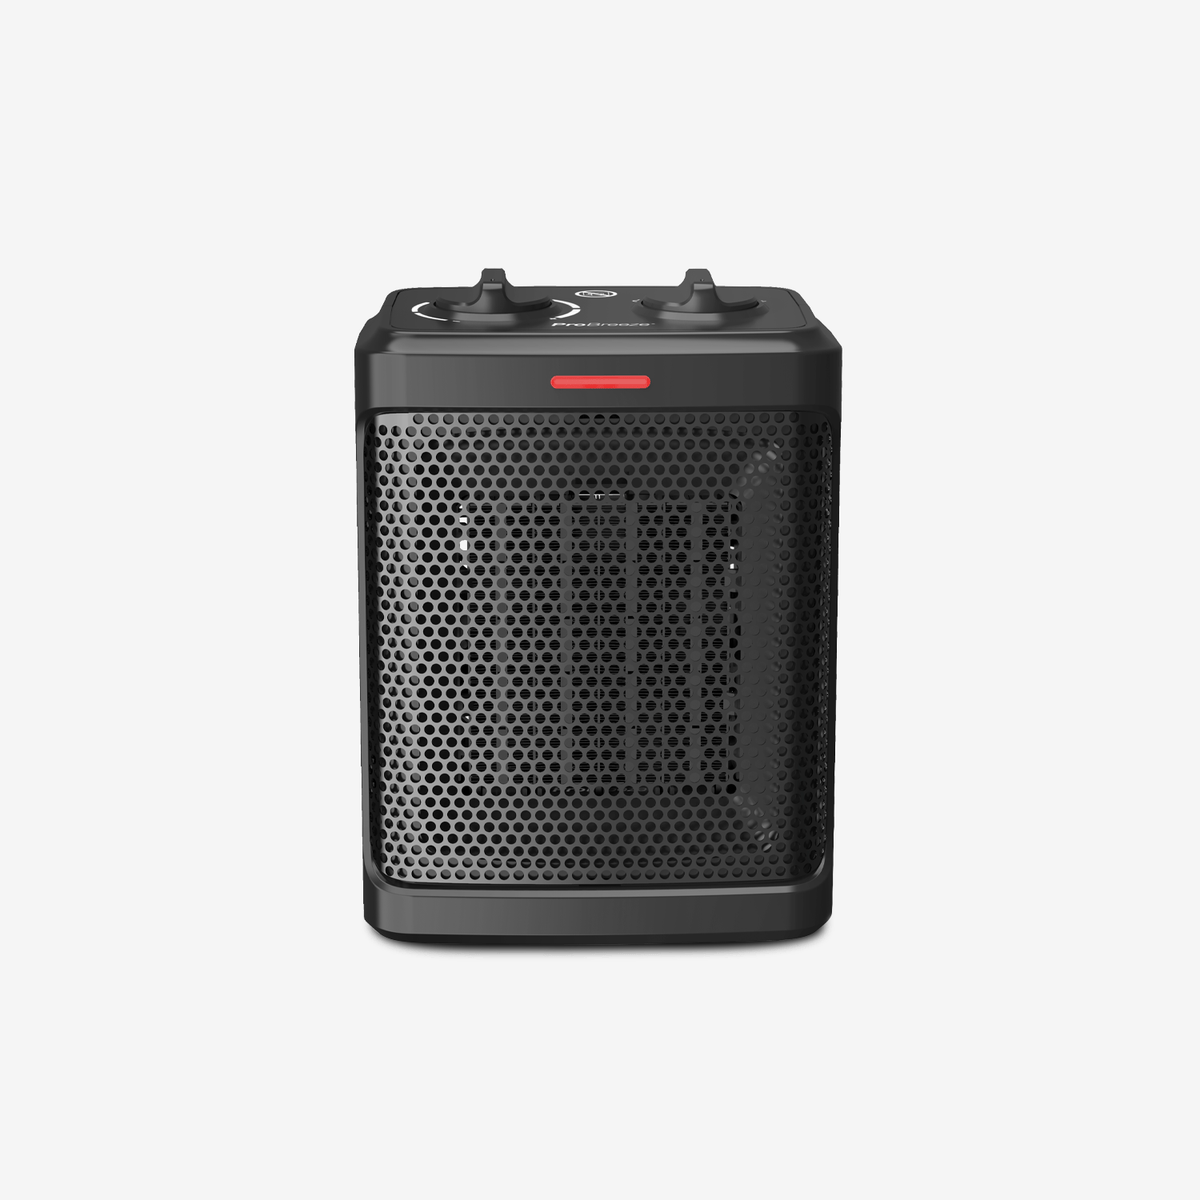 Mini radiateur en céramique 1500 W - Noir